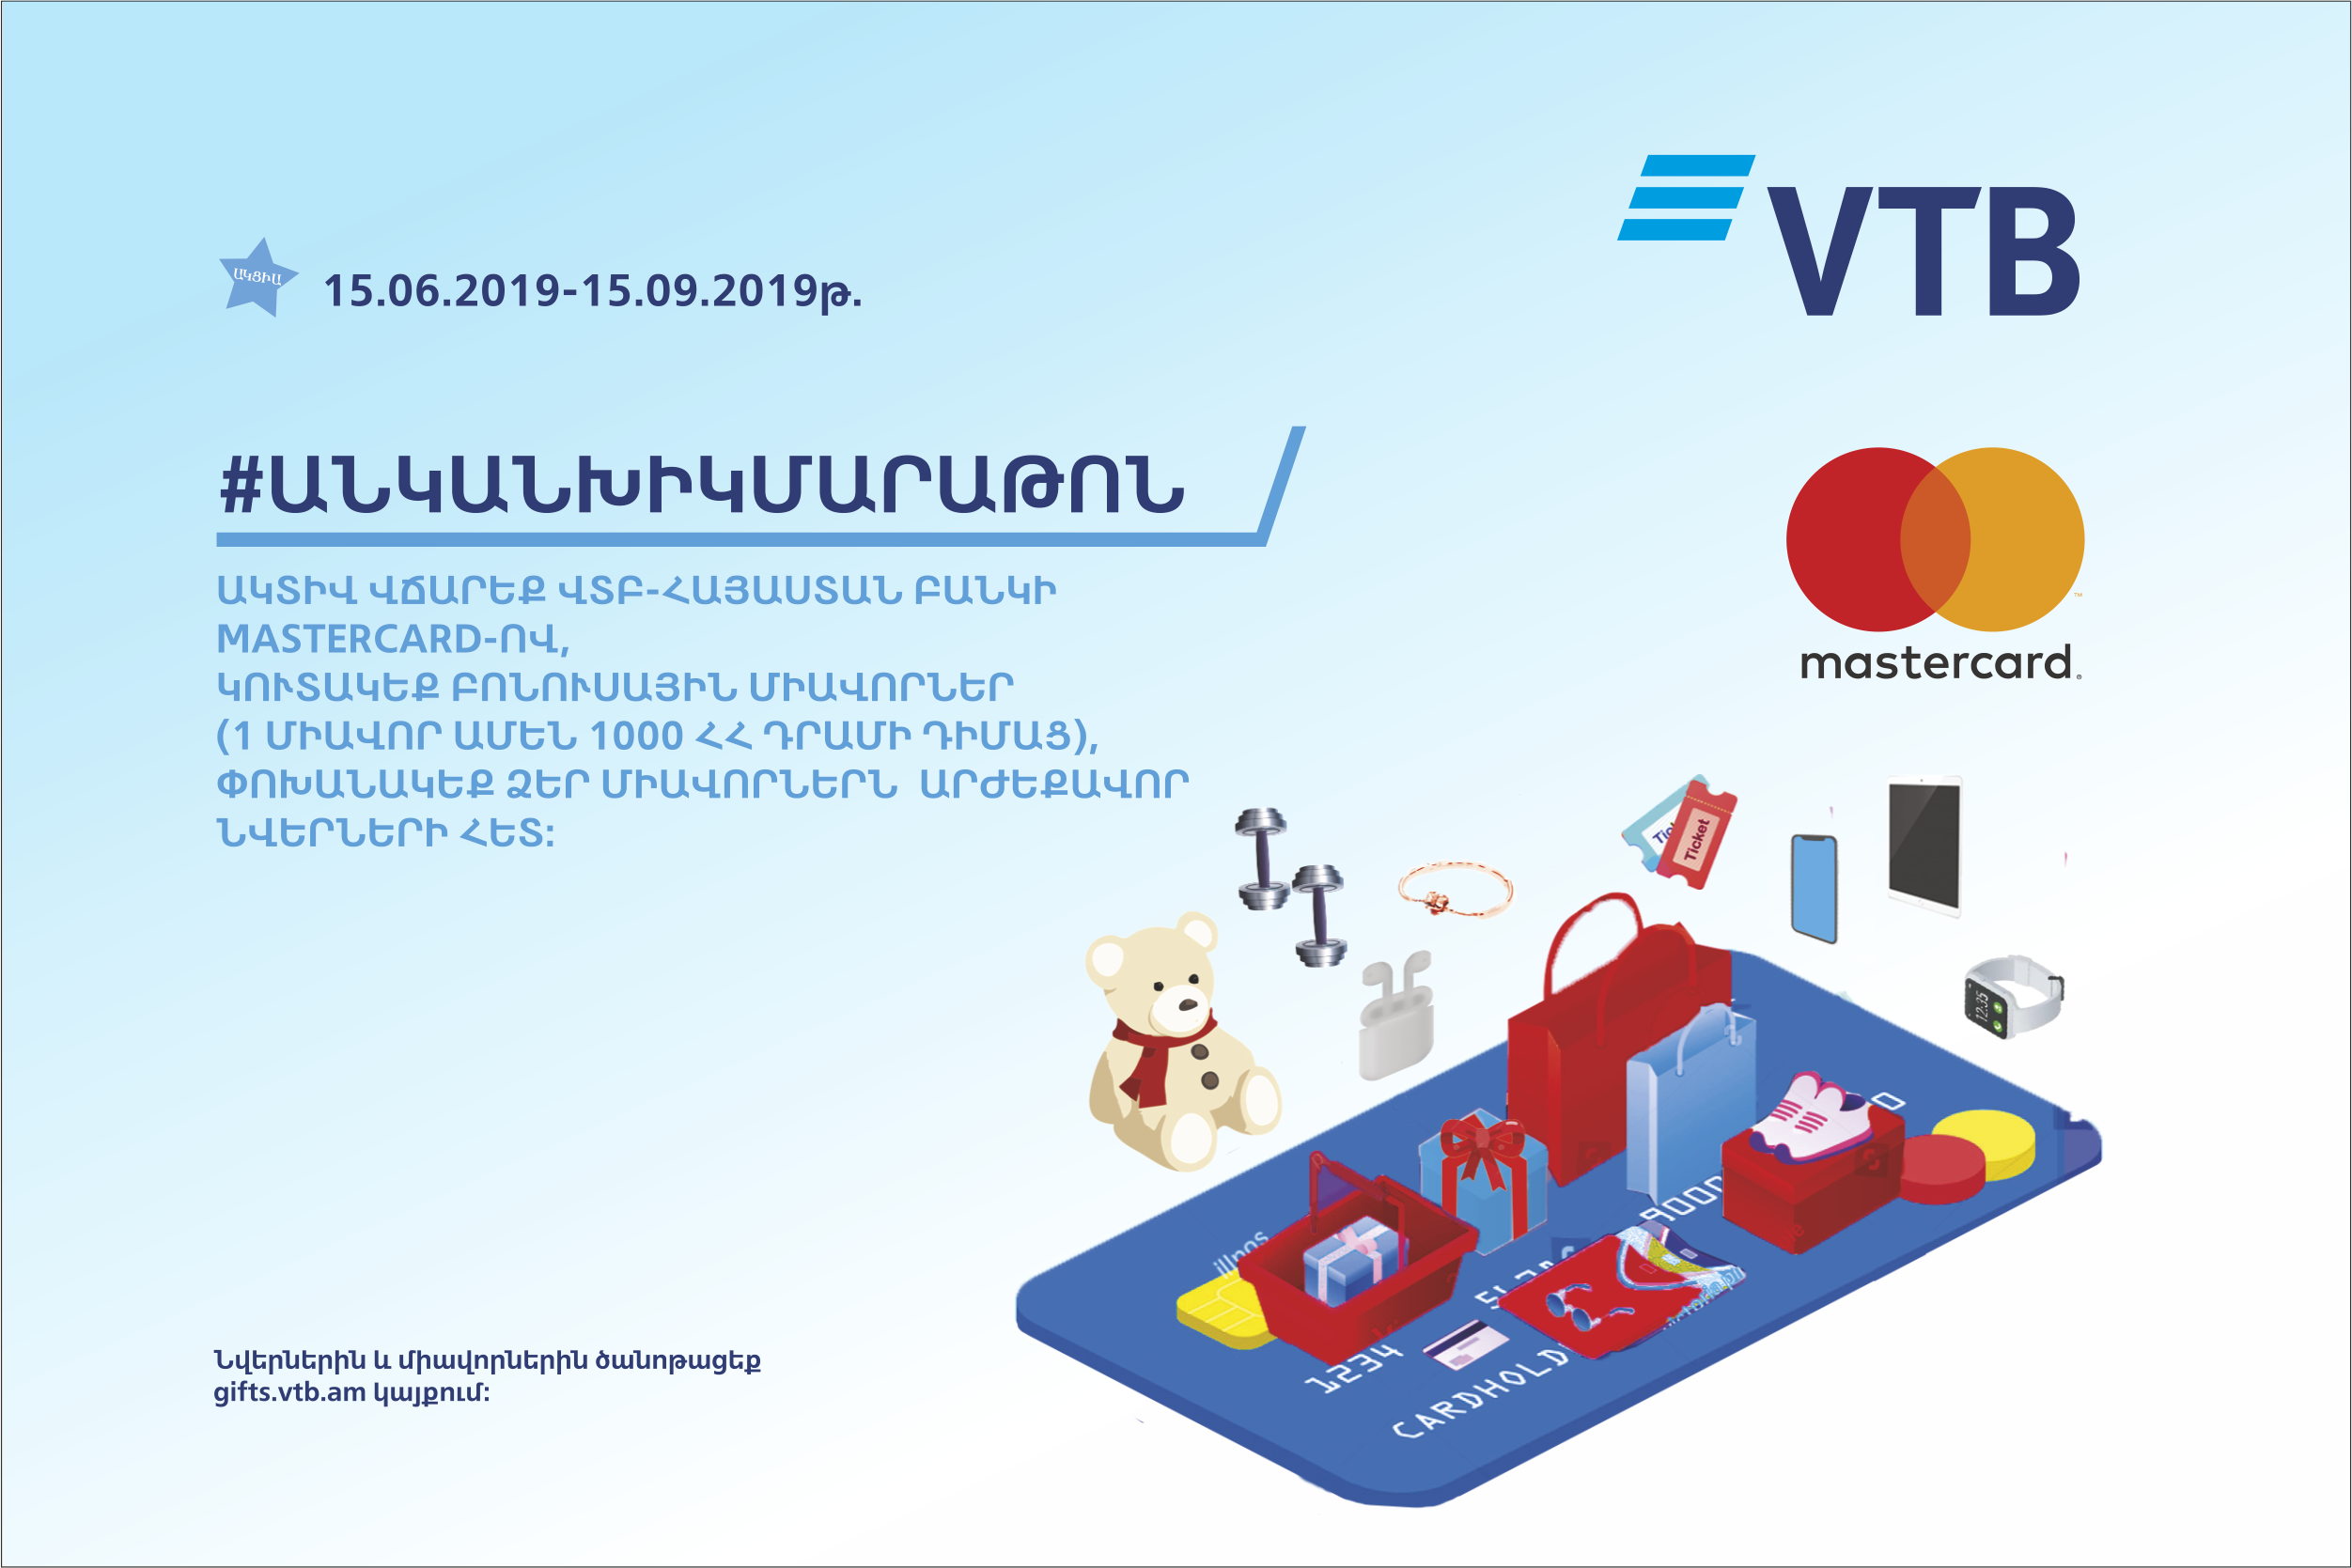 ՎՏԲ-Հայաստան Բանկը Mastercard-ի հետ համատեղ մեկնարկում է ակցիա #անկանխիկմարաթոն